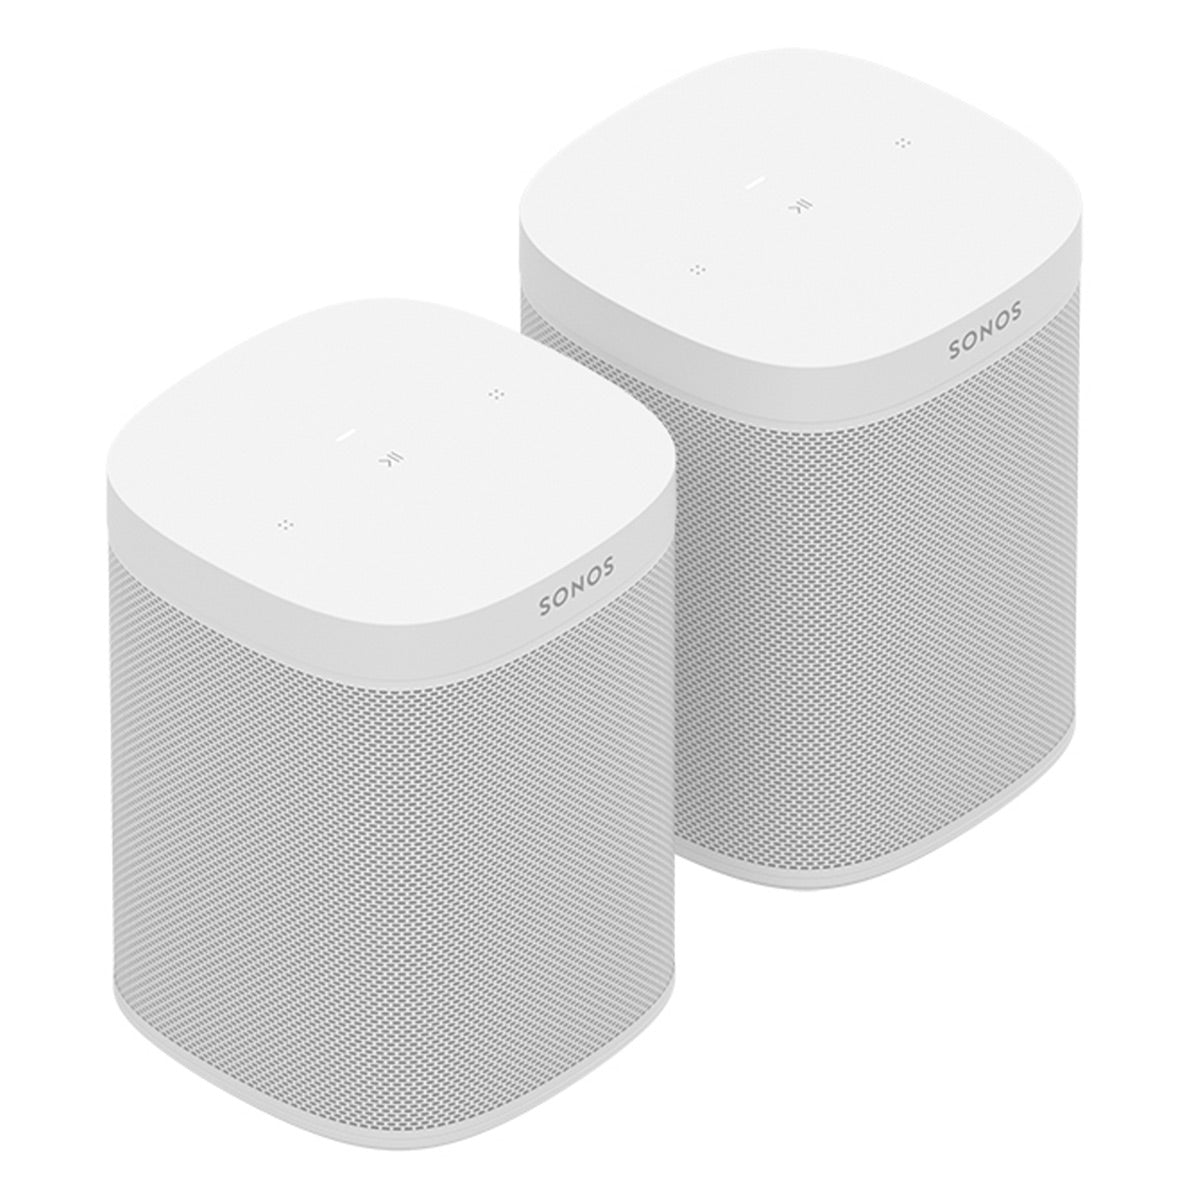 Sonos Premium Immersive Set with Beam (Gen 2, White) Soundbar, Sub Wireless Subwoofer (Gen 3, White), and Pair of One SL Wireless Speaker (White)